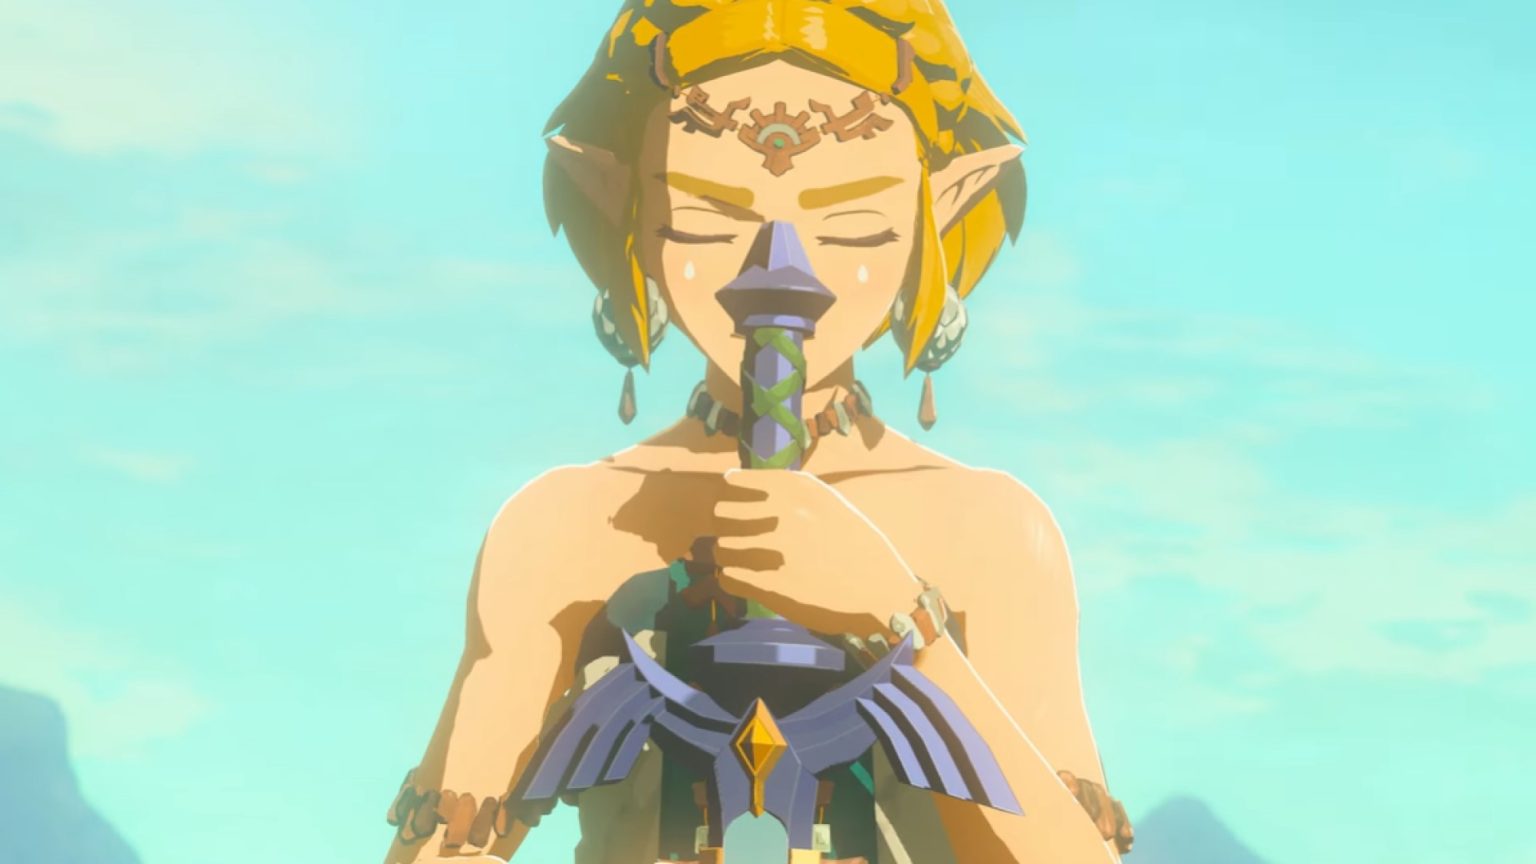 Gerücht: The Legend of Zelda-Spiel mit Zelda als Protagonistin könnte in Entwicklung sein